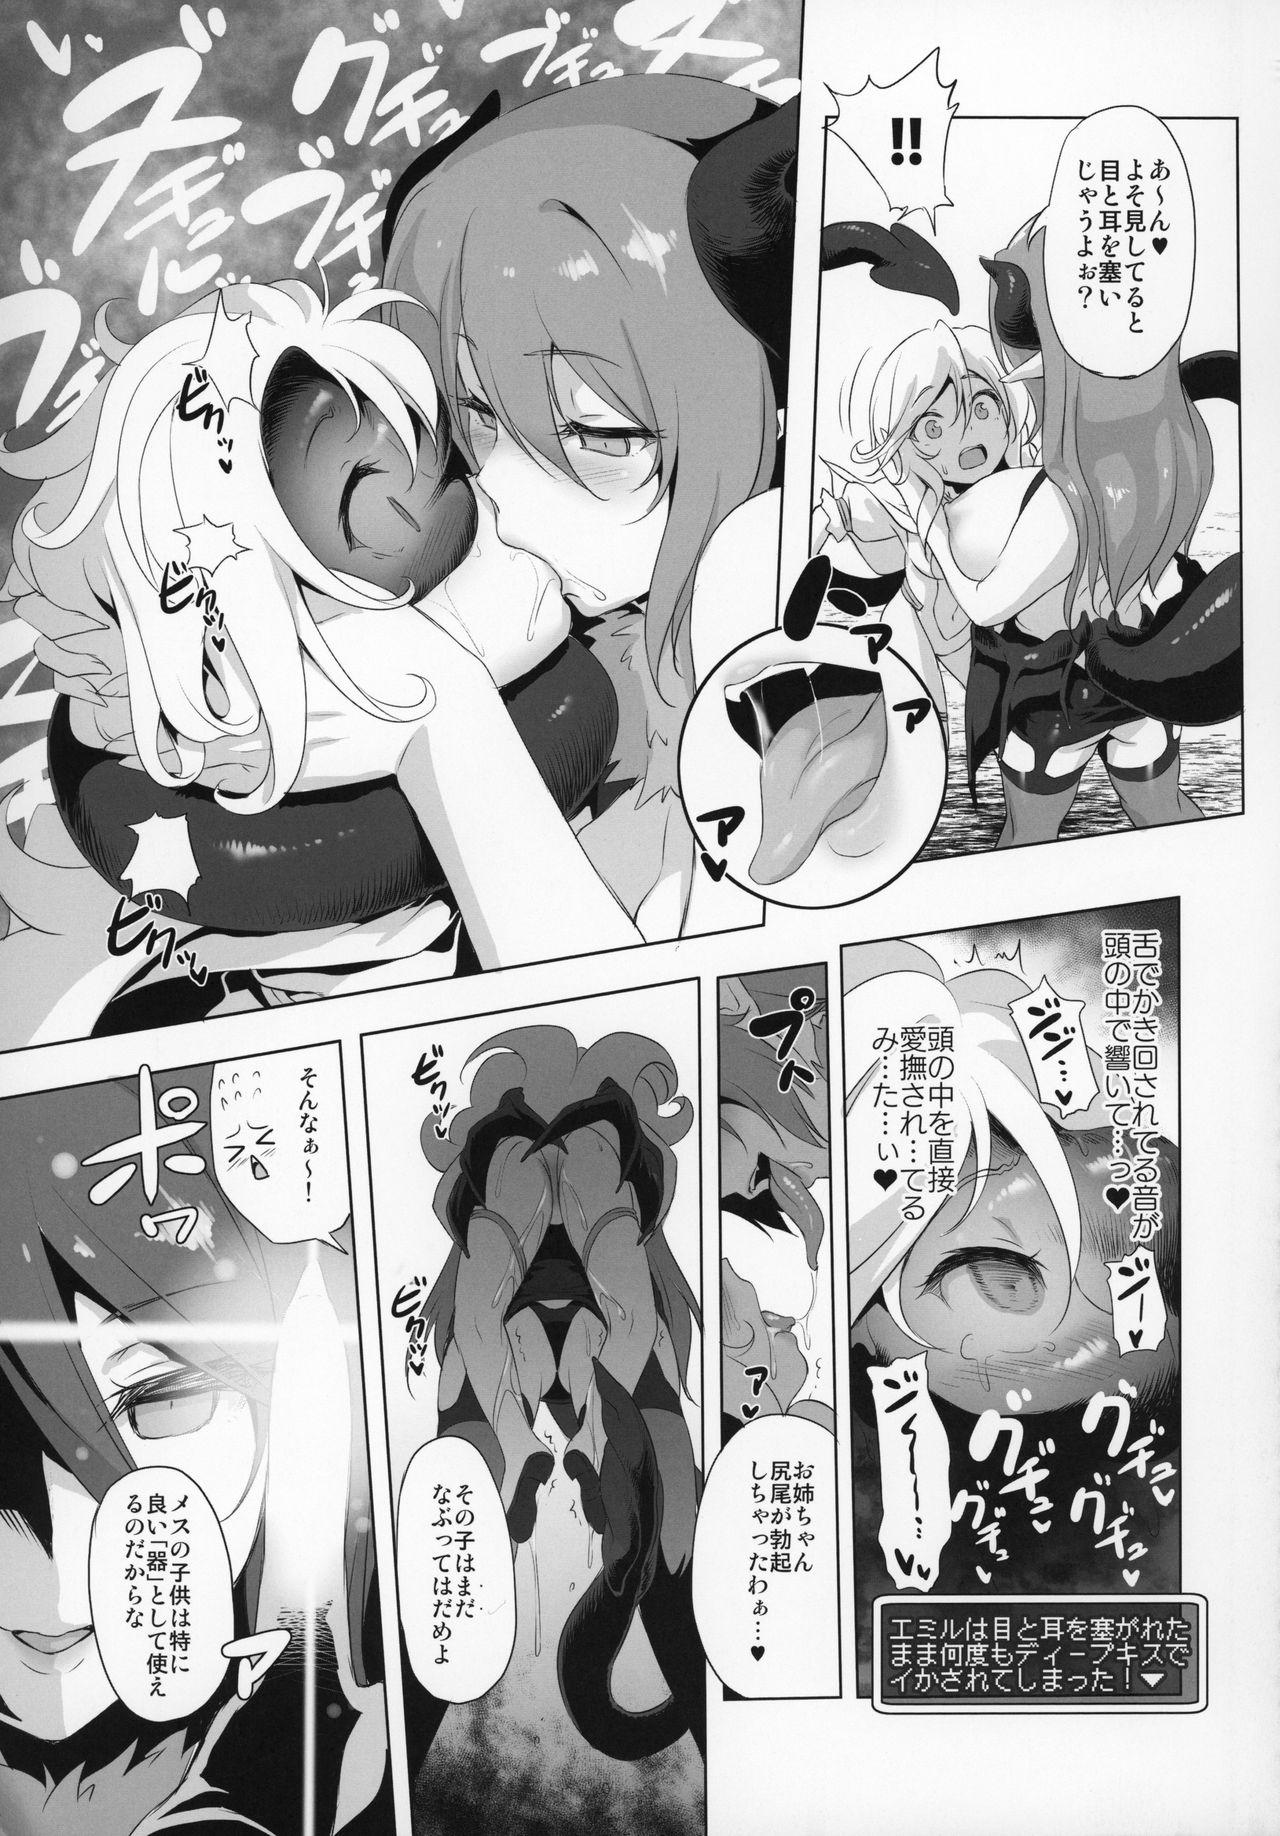 Toy Makotoni Zannen desu ga Bouken no Sho 6 wa Kiete Shimaimashita. - Original Pawg - Page 12